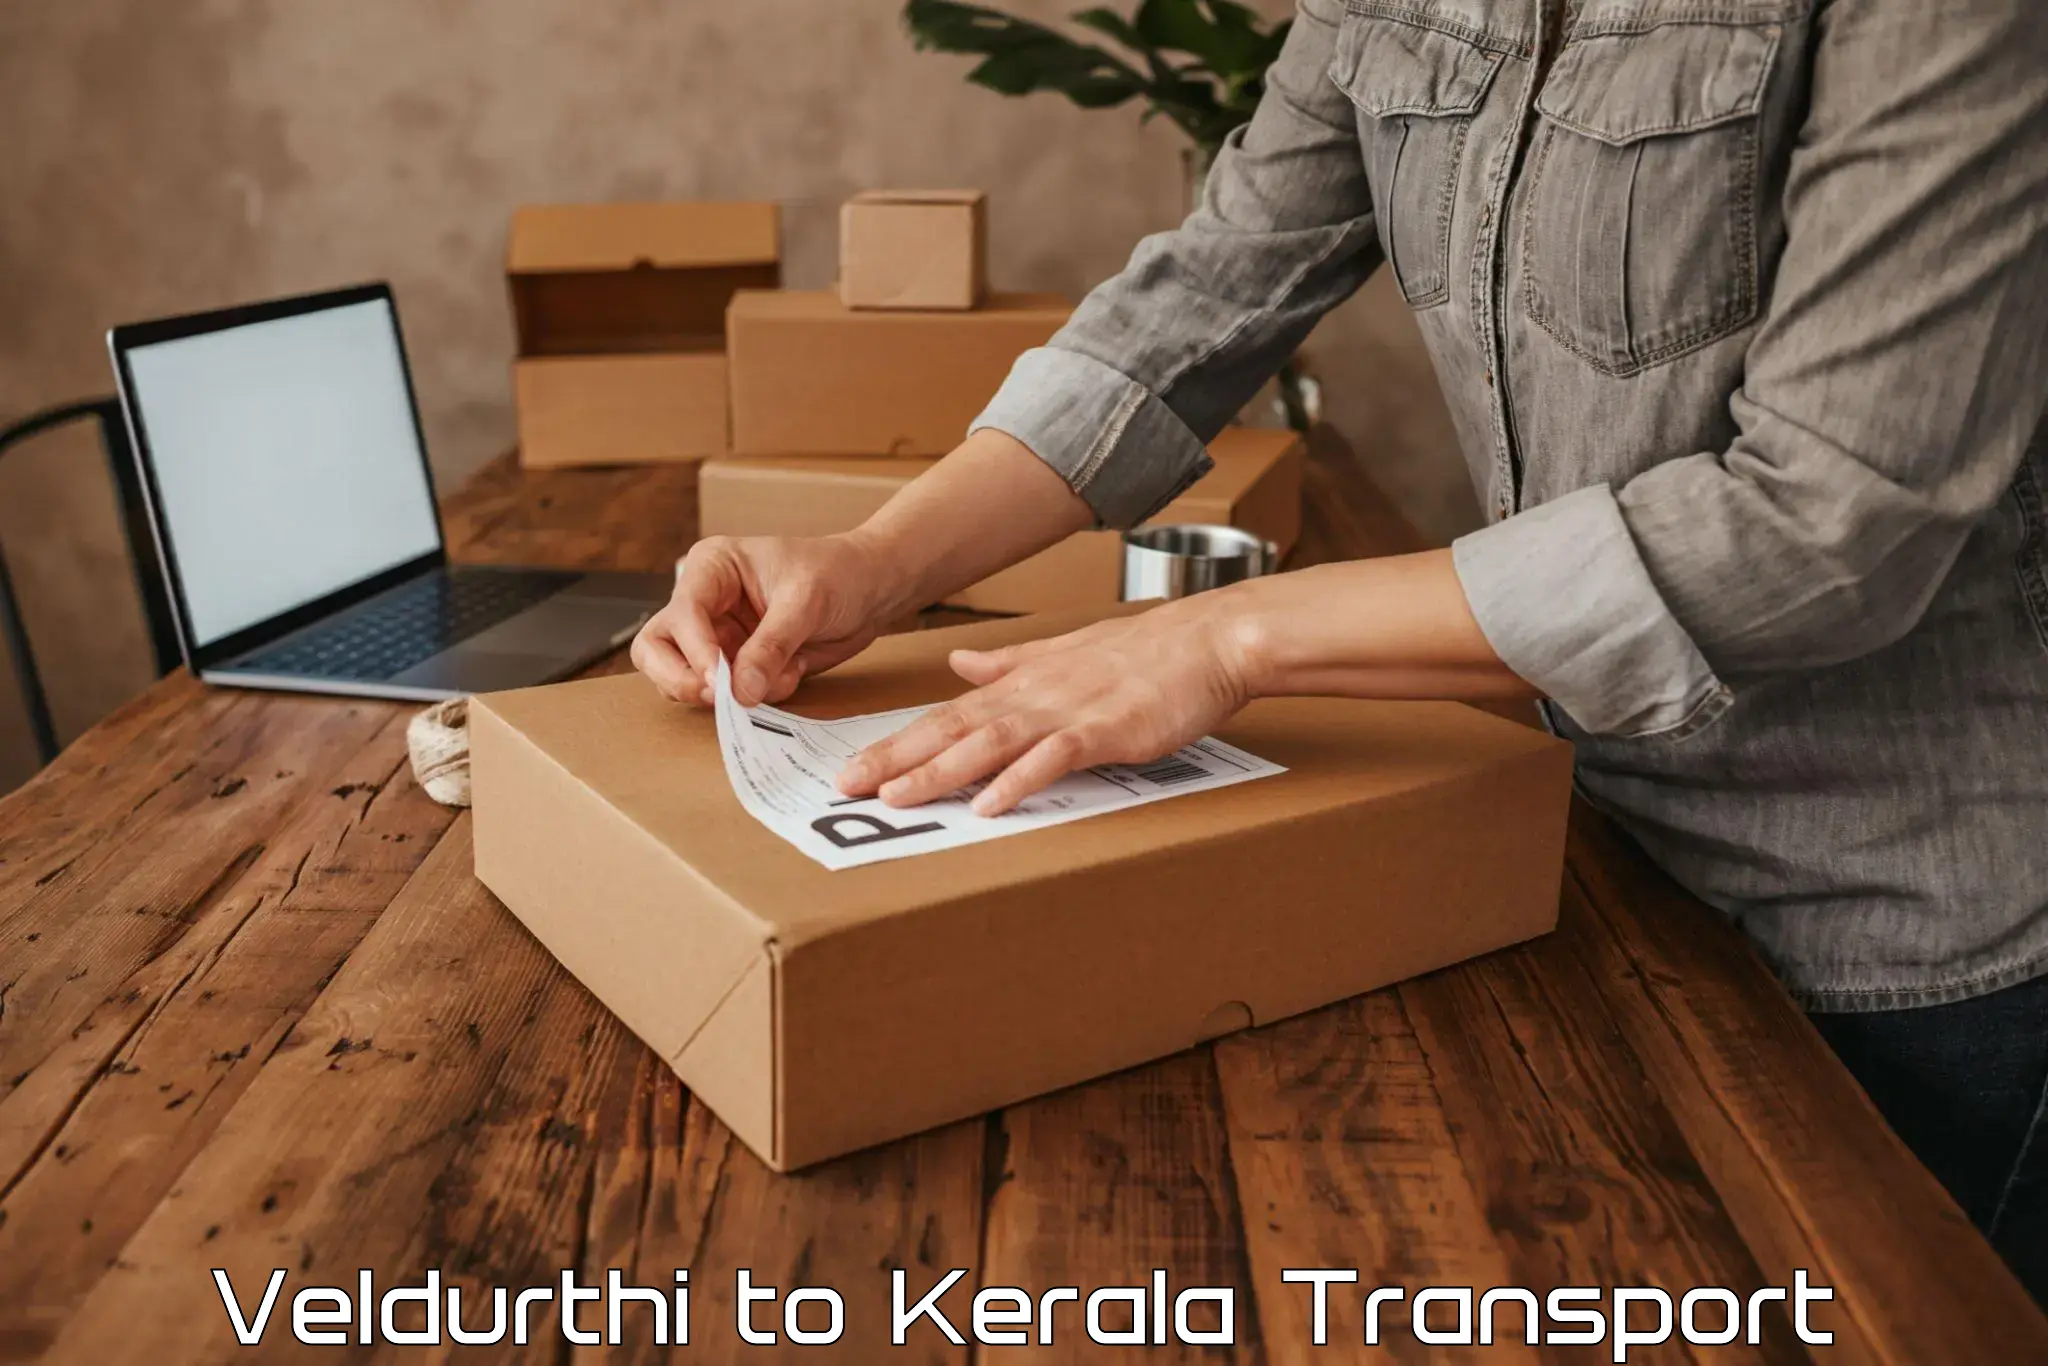 Nearest transport service Veldurthi to Poojapura